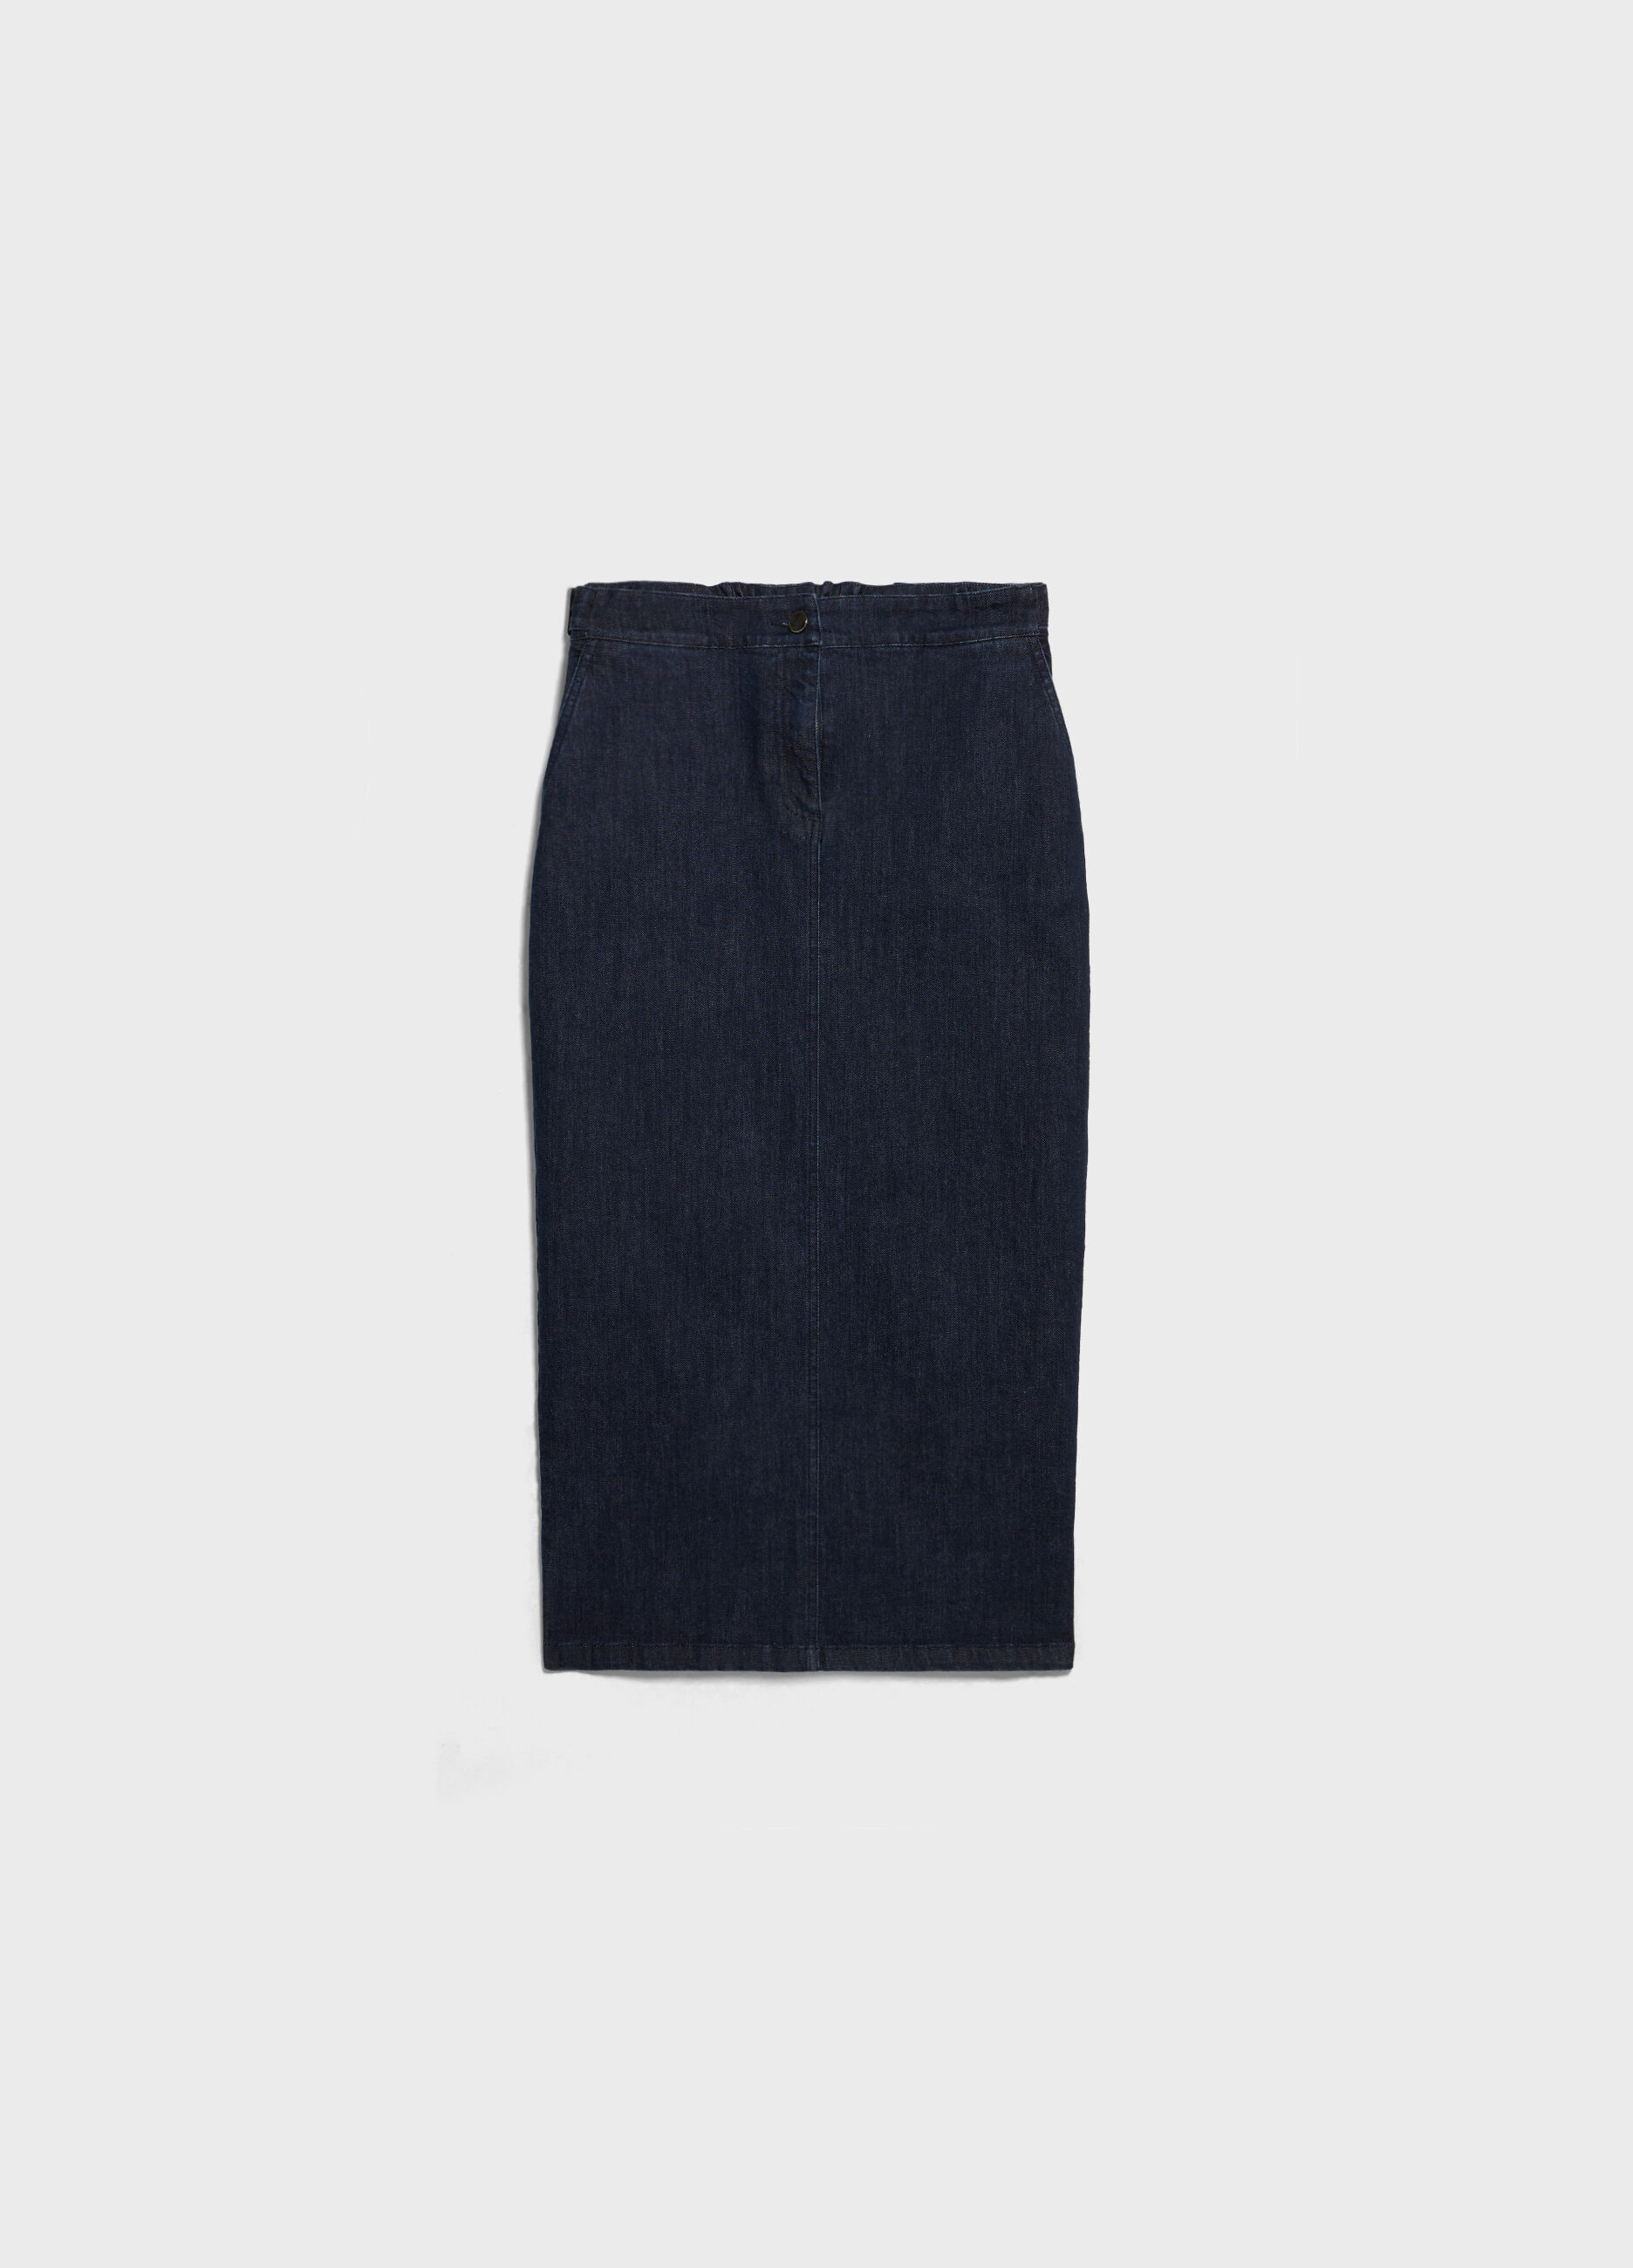 Long denim skirt with slit._4